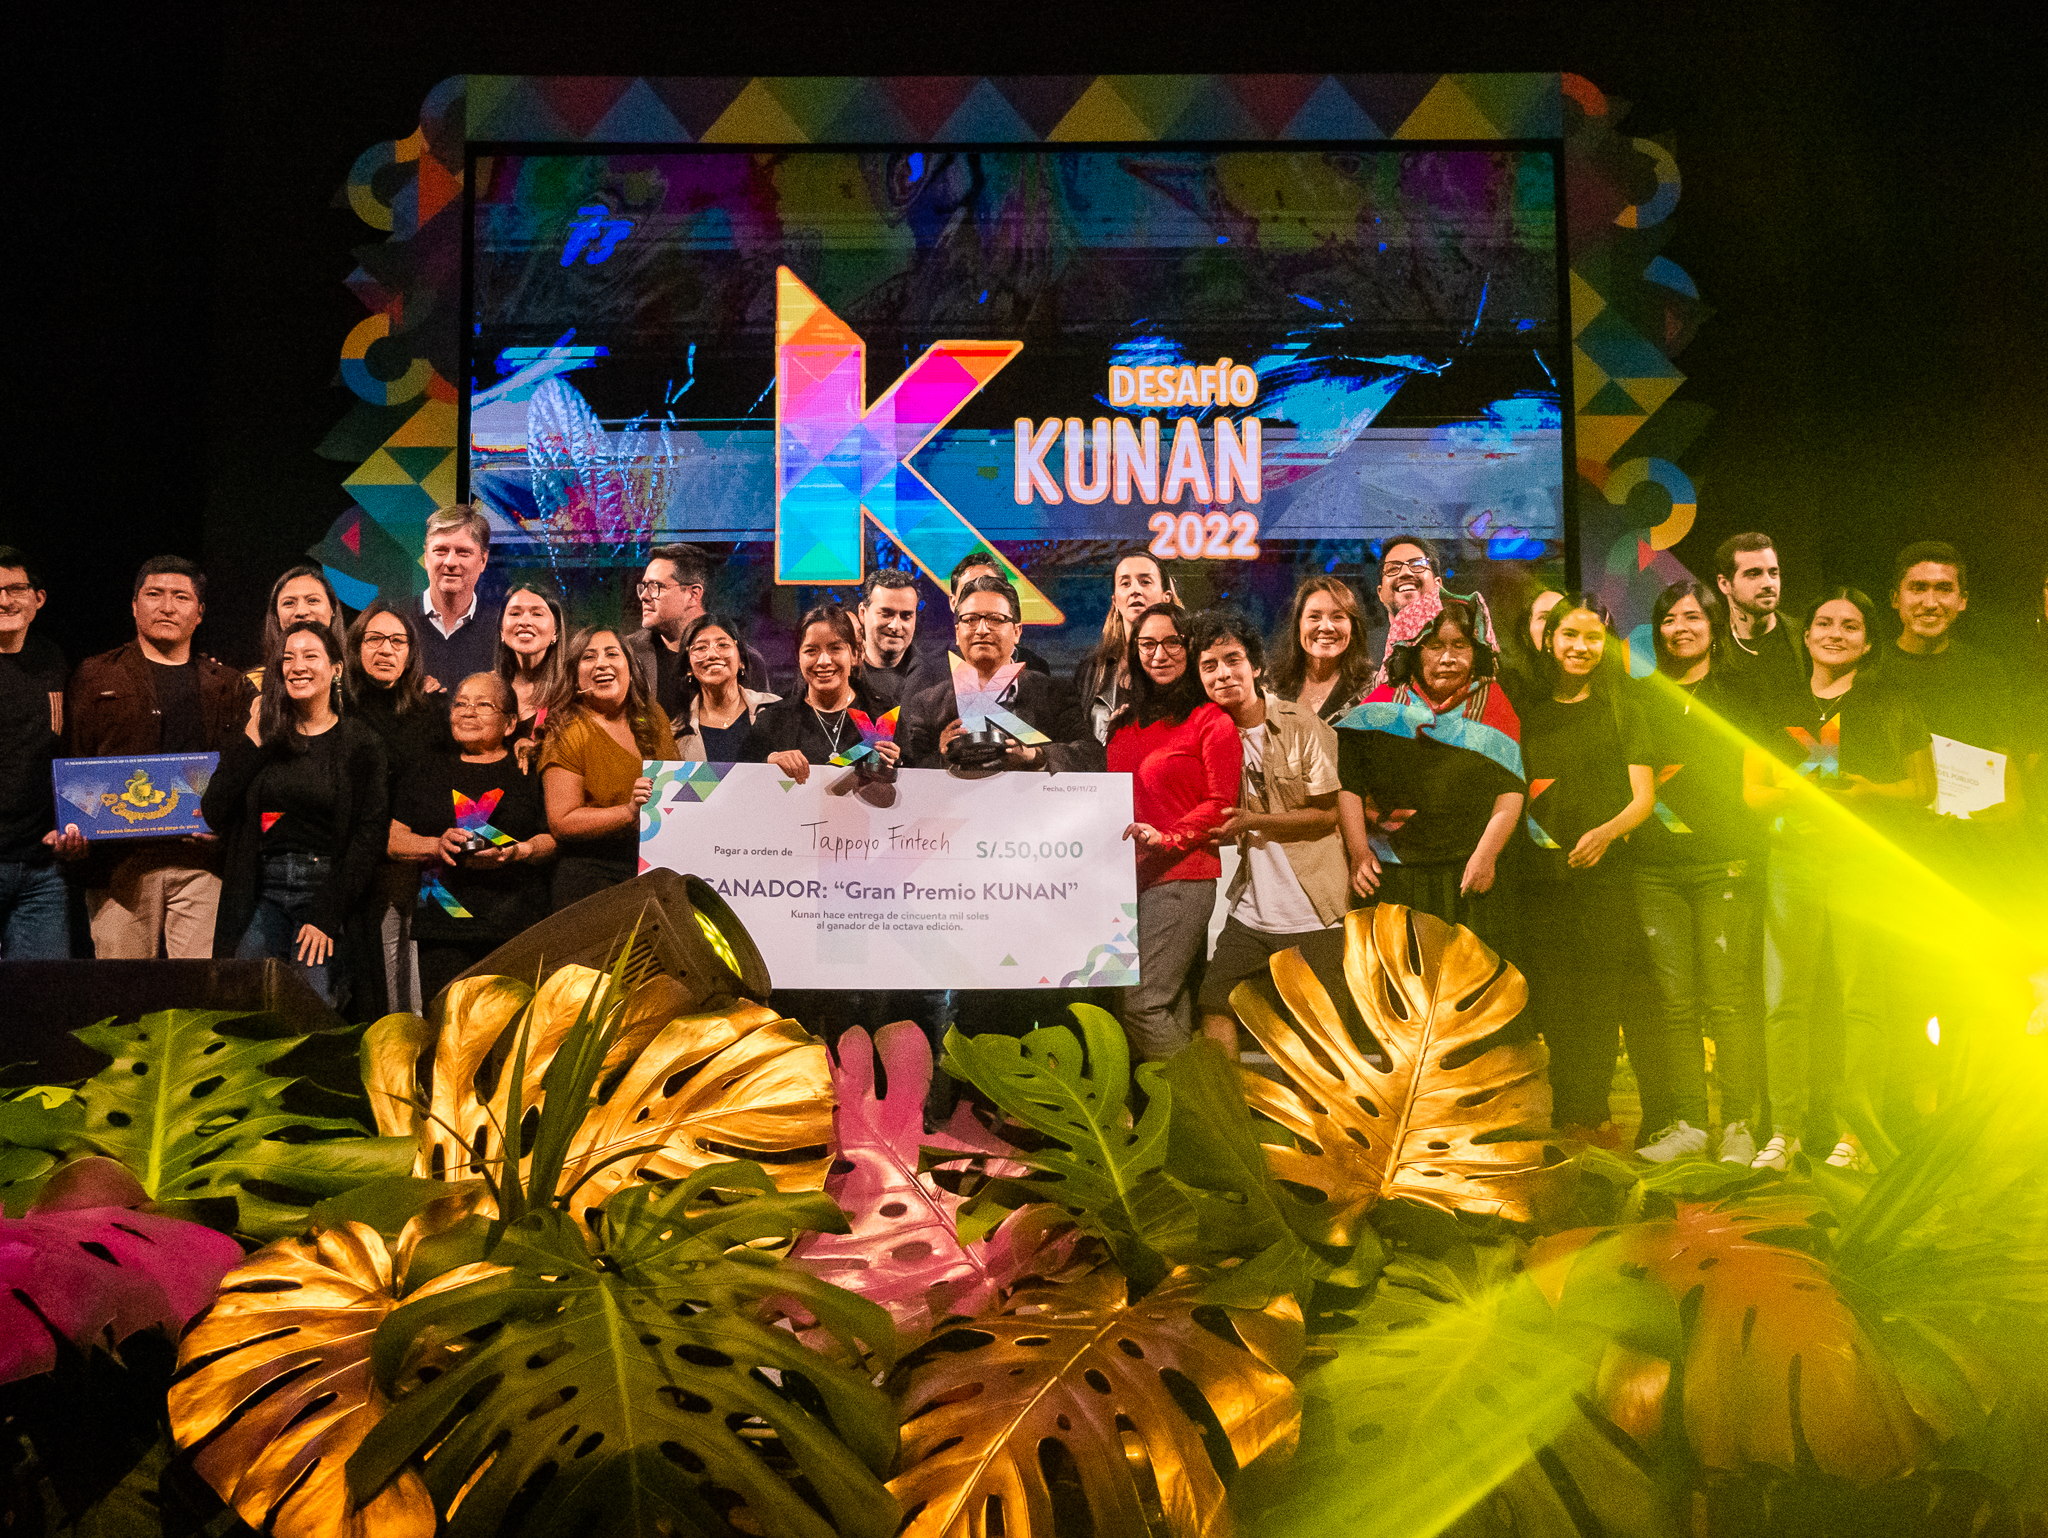 Foto de Conoce al ganador del Gran Premio del Desafío Kunan: “TAPPOYO FINTECH” que otorga préstamos grupales a mujeres emprendedoras